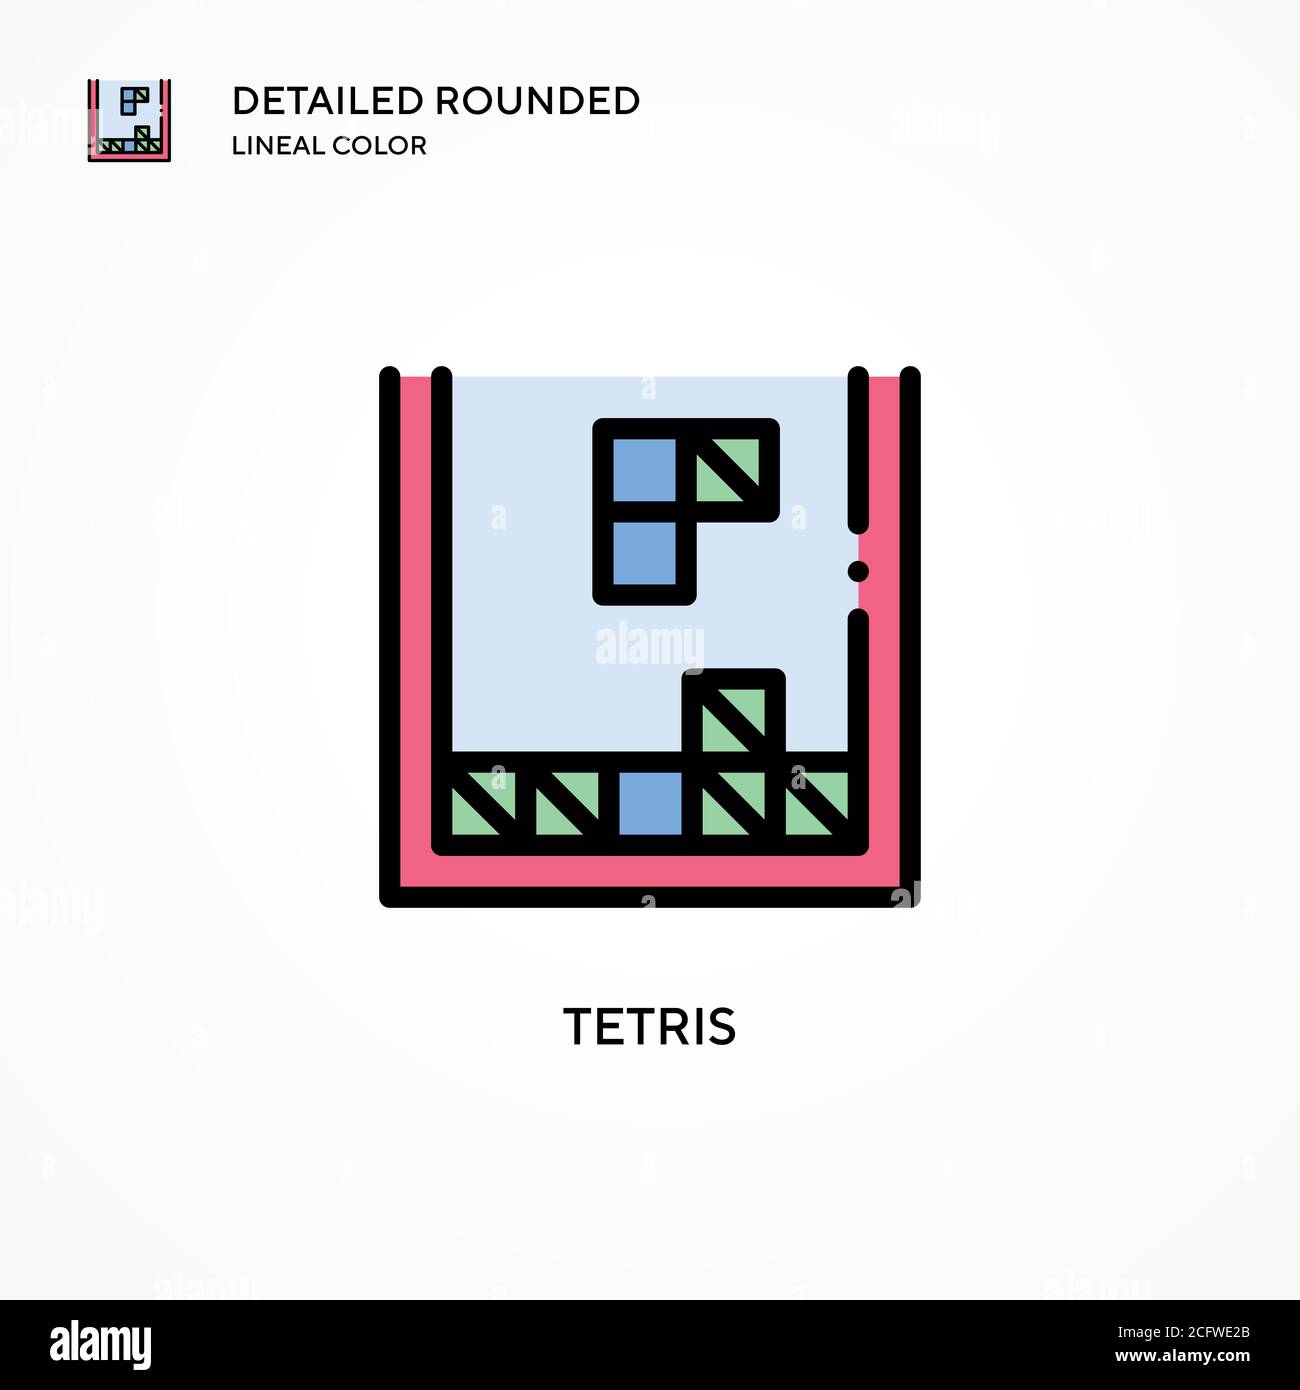 7,770 Tetris Images, Stock Photos, 3D objects, & Vectors